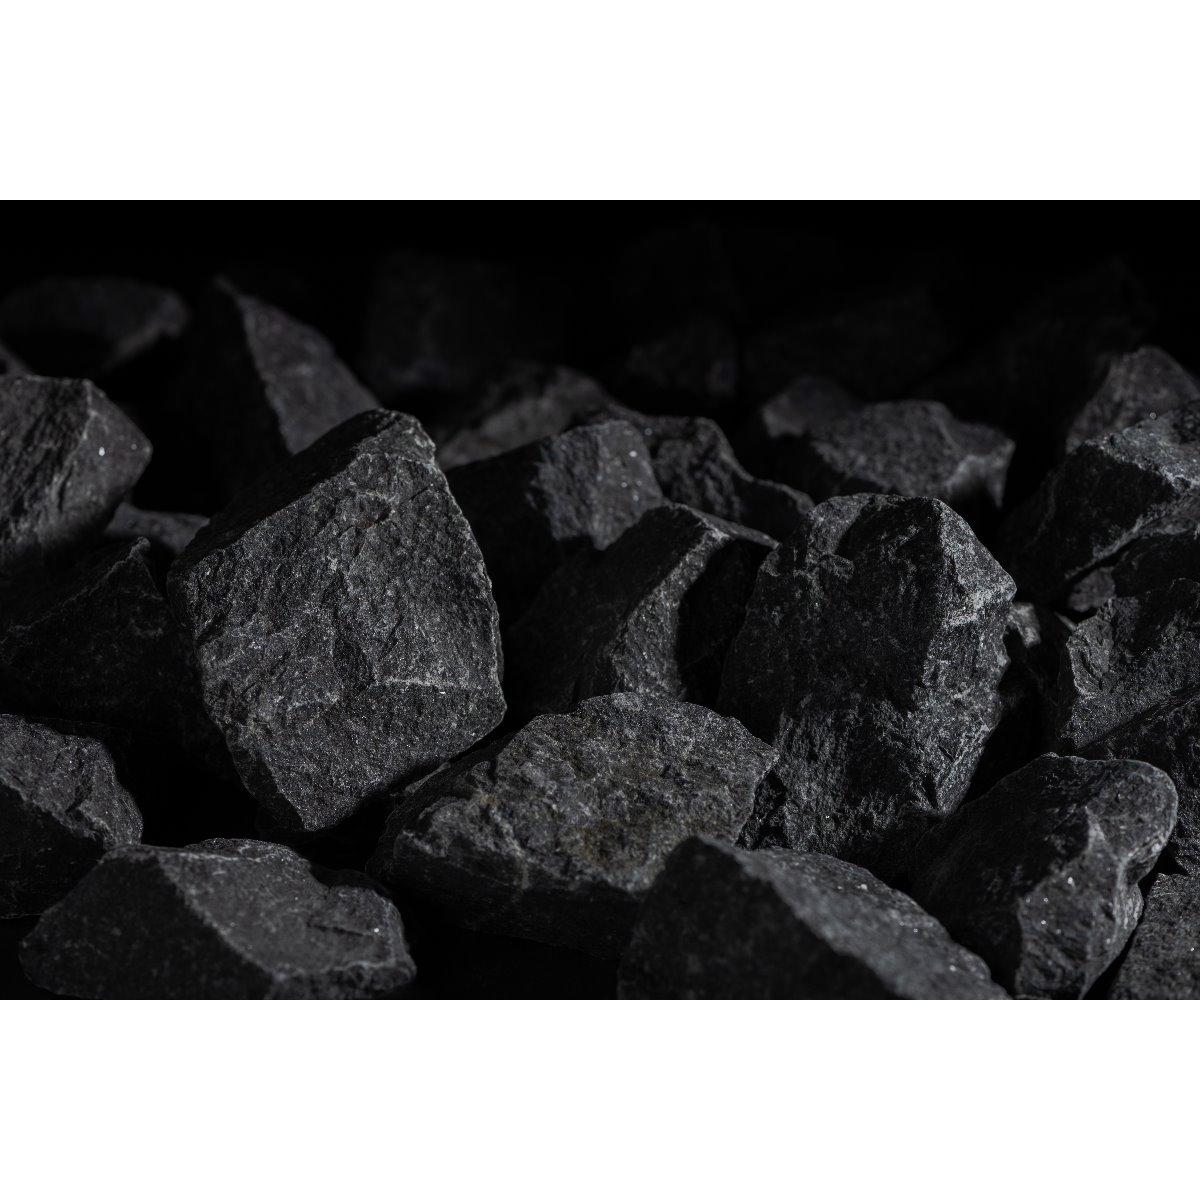 wellmia® 20 kg Saunasteine Vukanit black 5-10 cm, dunkle Saunasteine - für perfekten Dampf